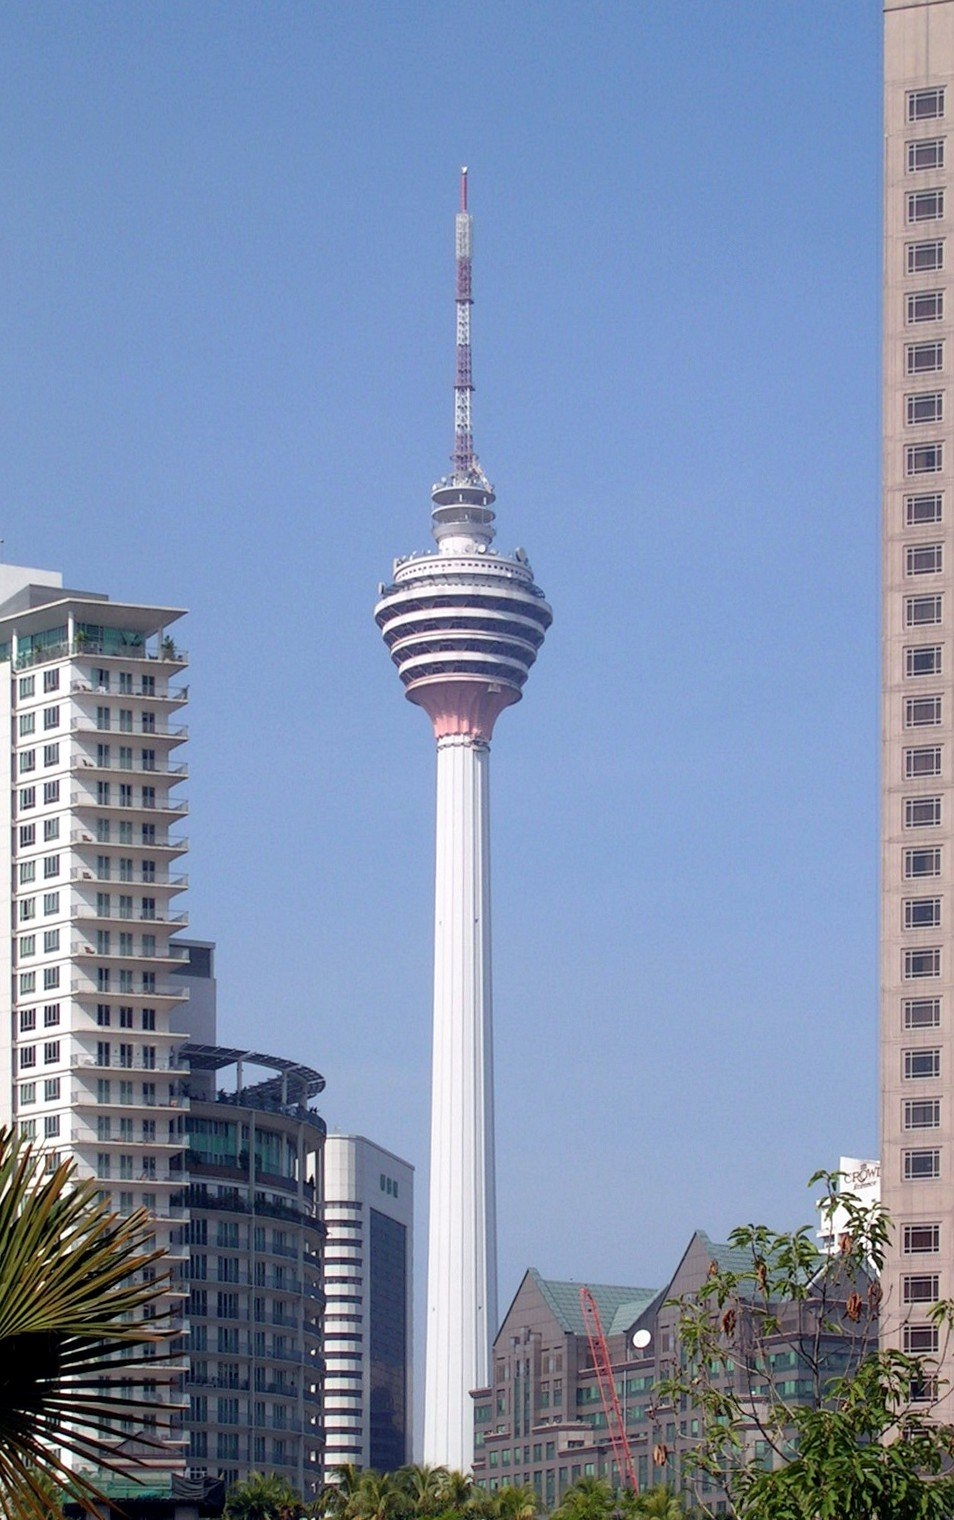 Menara Kuala Lumpur - 420 metros - Malásia - Inaugurada em 1996 na cidade de Kuala Lumpur, a torre chama a atenção pelo seu design único, com uma haste estilizada e uma esfera que abriga um observatório e um restaurante. Durante a noite, sua iluminação conta com cores que fazem com que se destaque no horizonte da cidade. Reprodução: Flipar